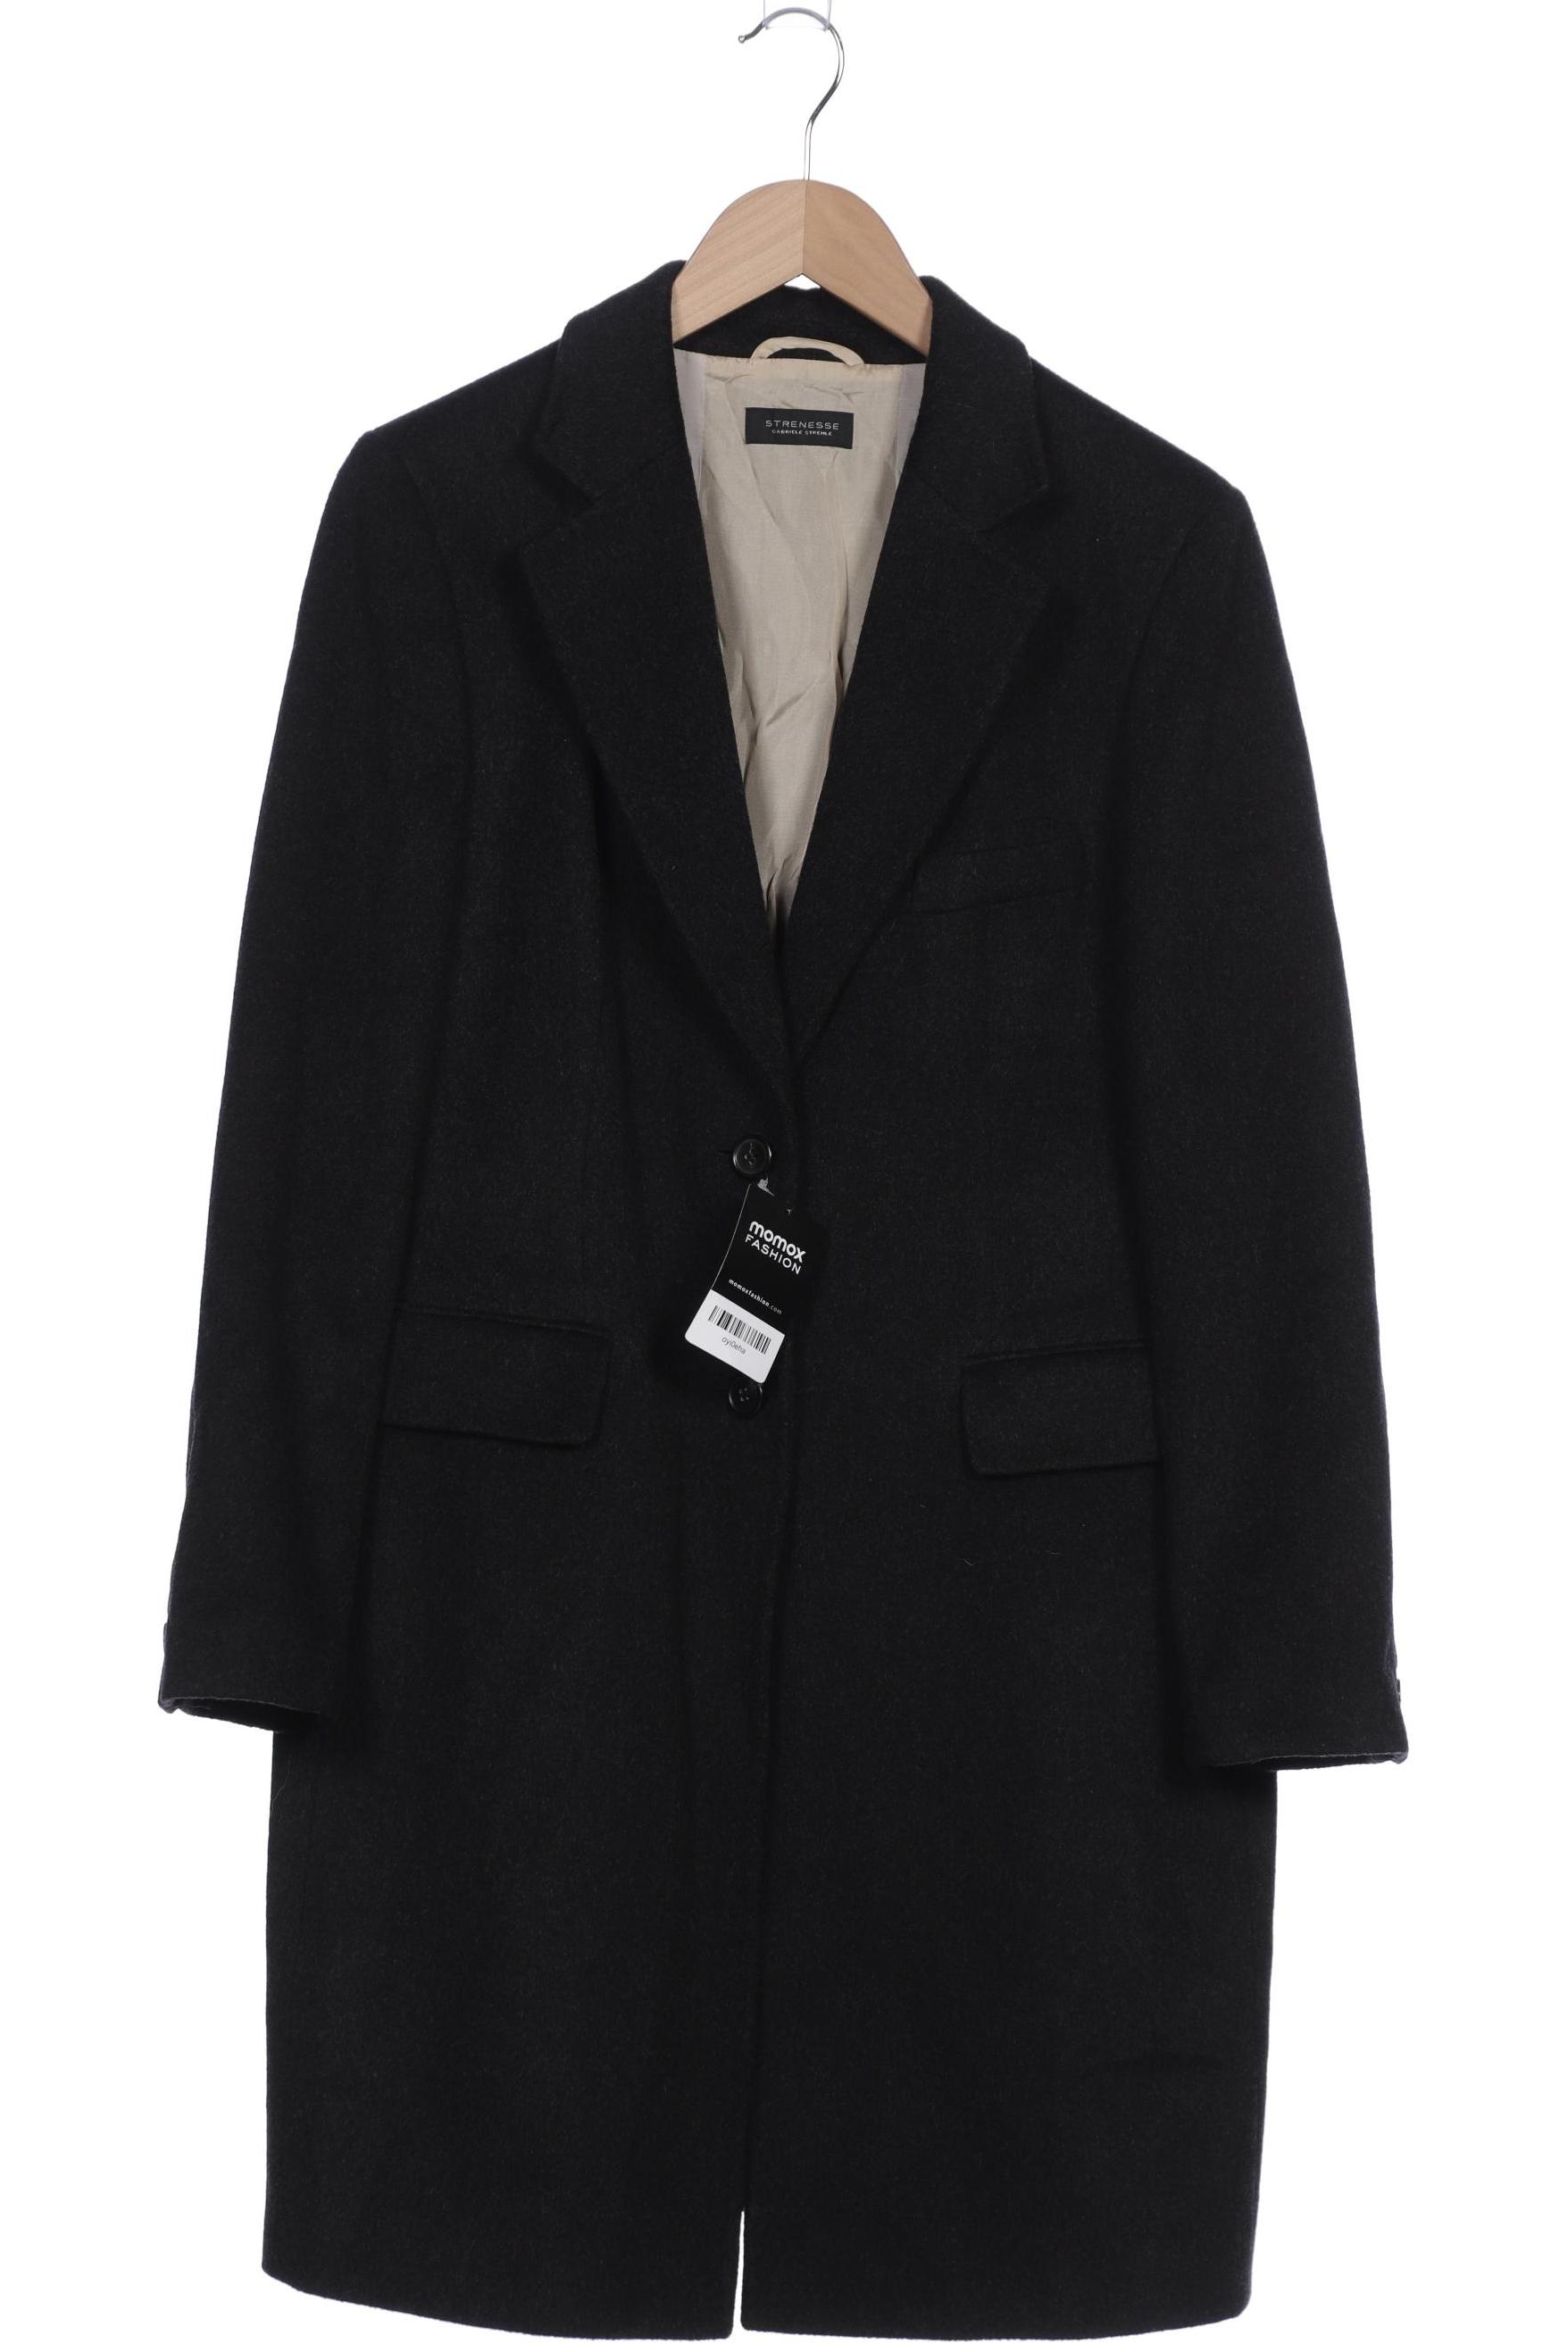 Strenesse Damen Mantel, schwarz, Gr. 38 von Strenesse